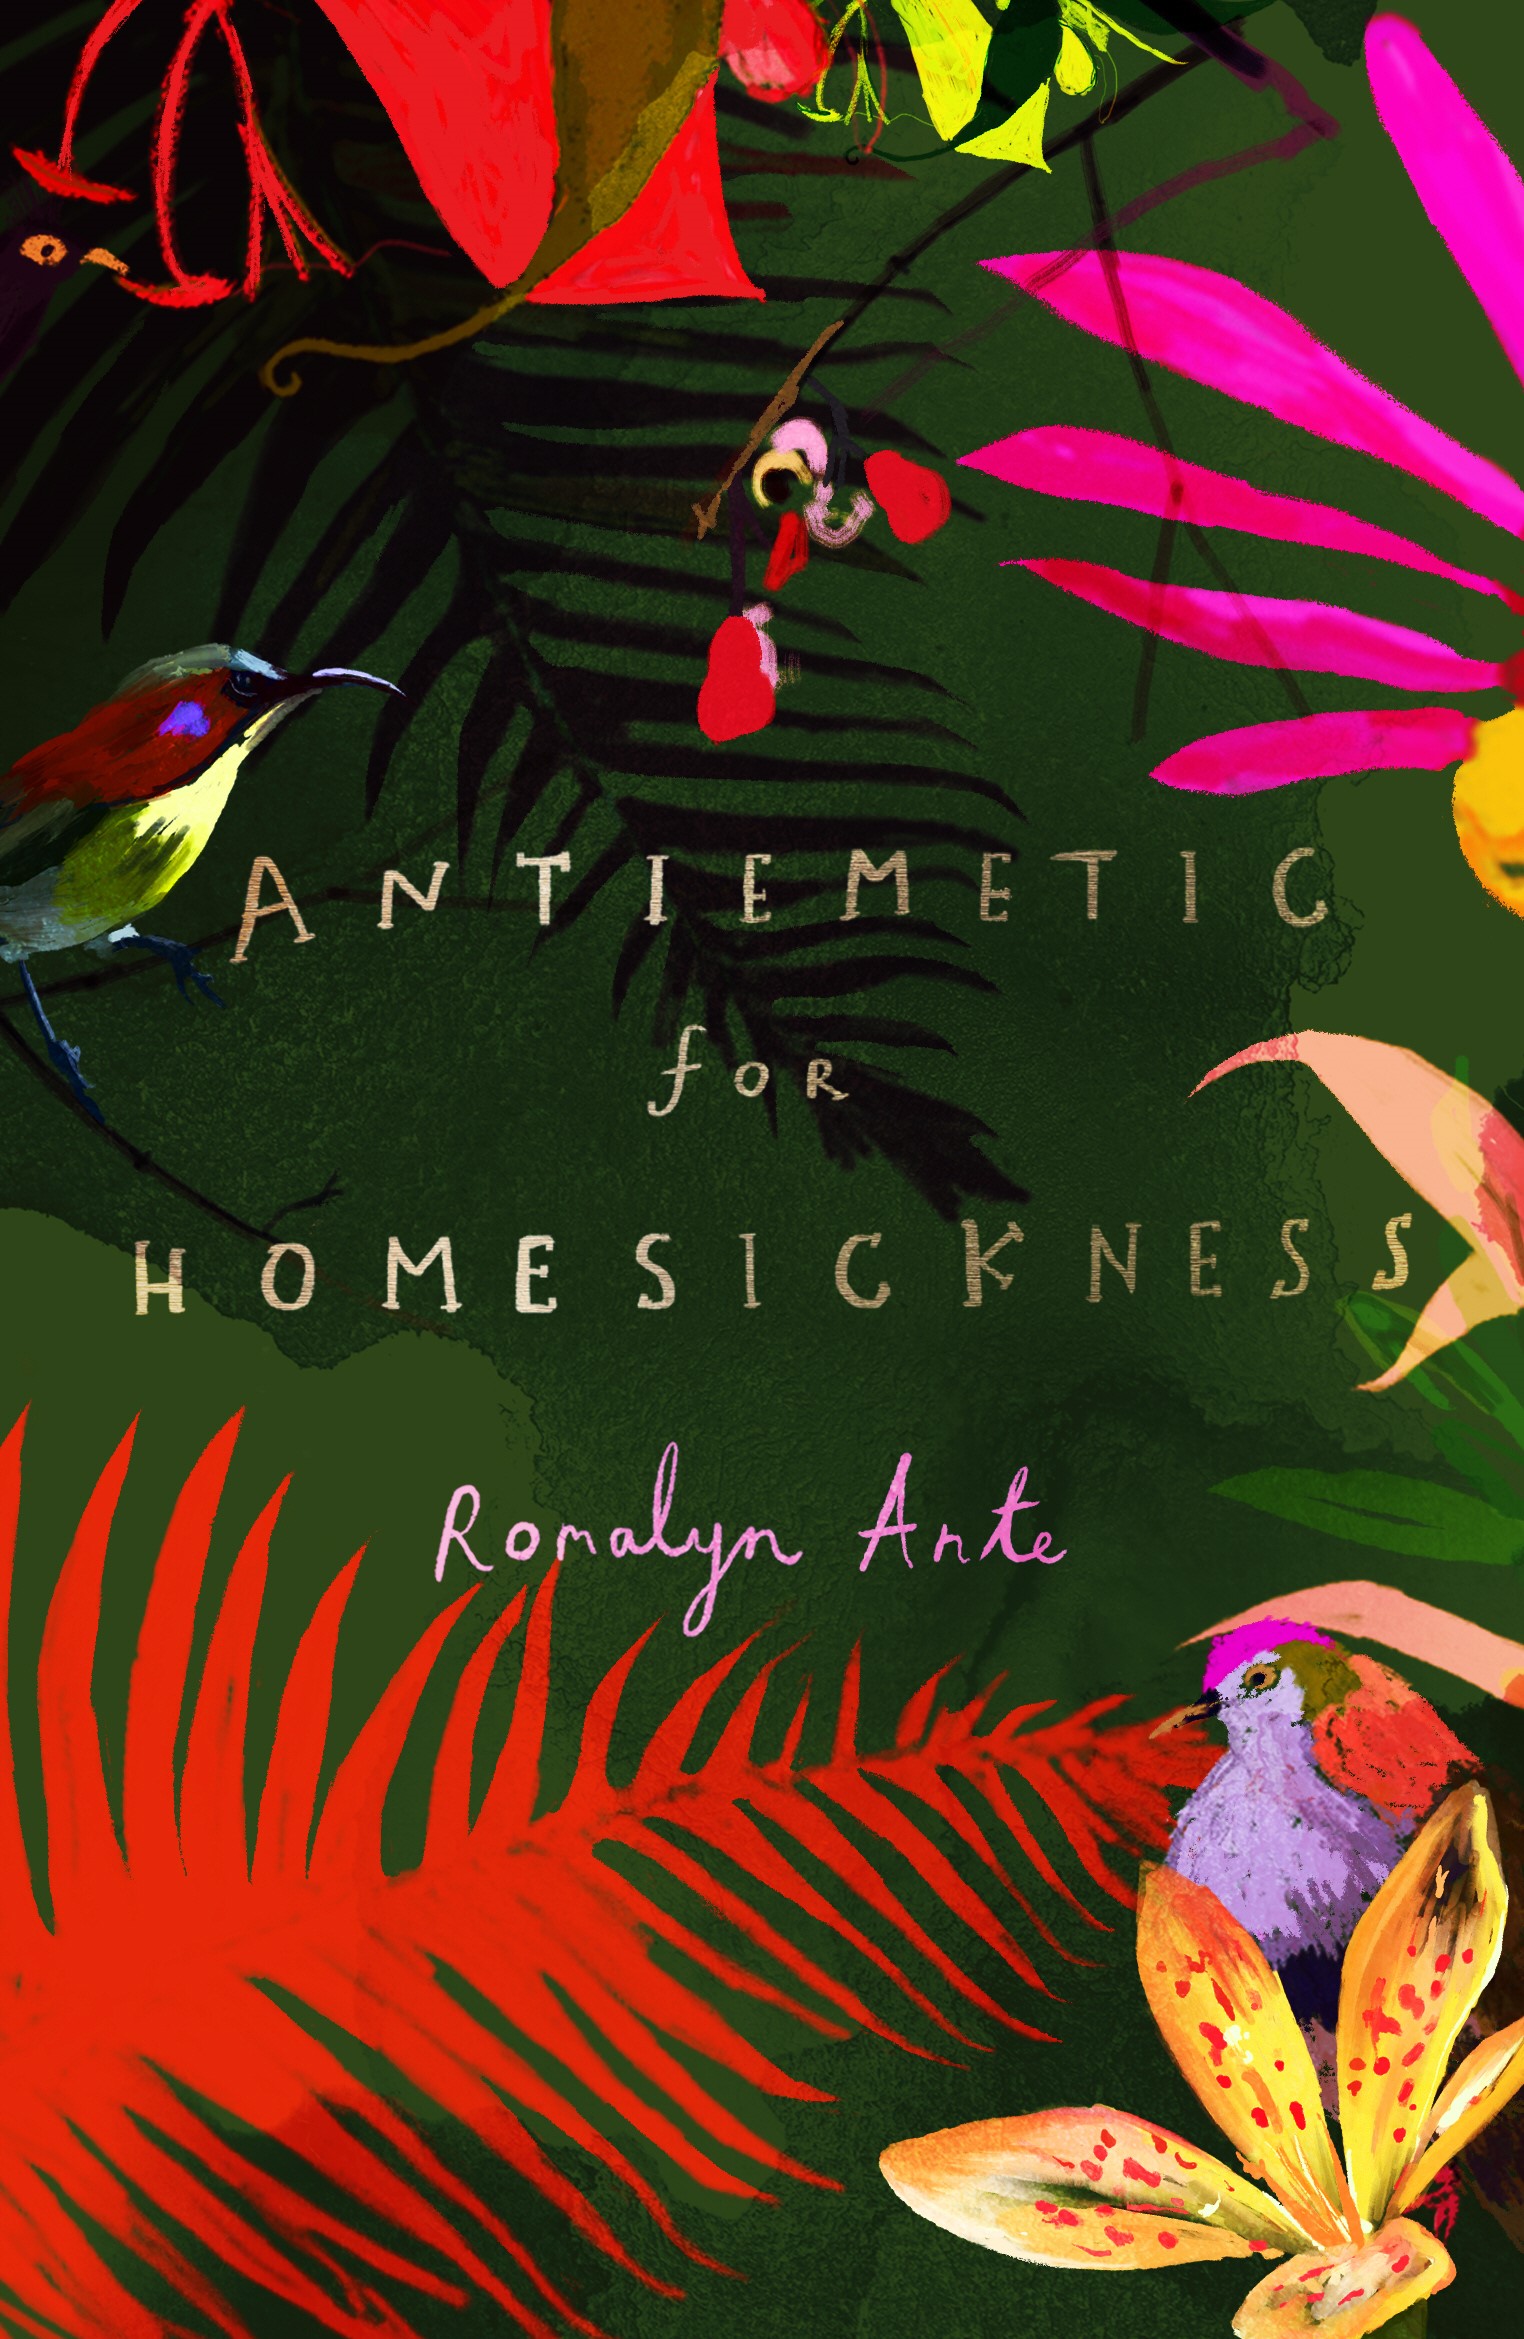 copertina con sfondo di vegetazione tropicales su cui si sovrappone il titolo Antiemetic for Homesickness e il nome dell'autrice, Romalyn Ante